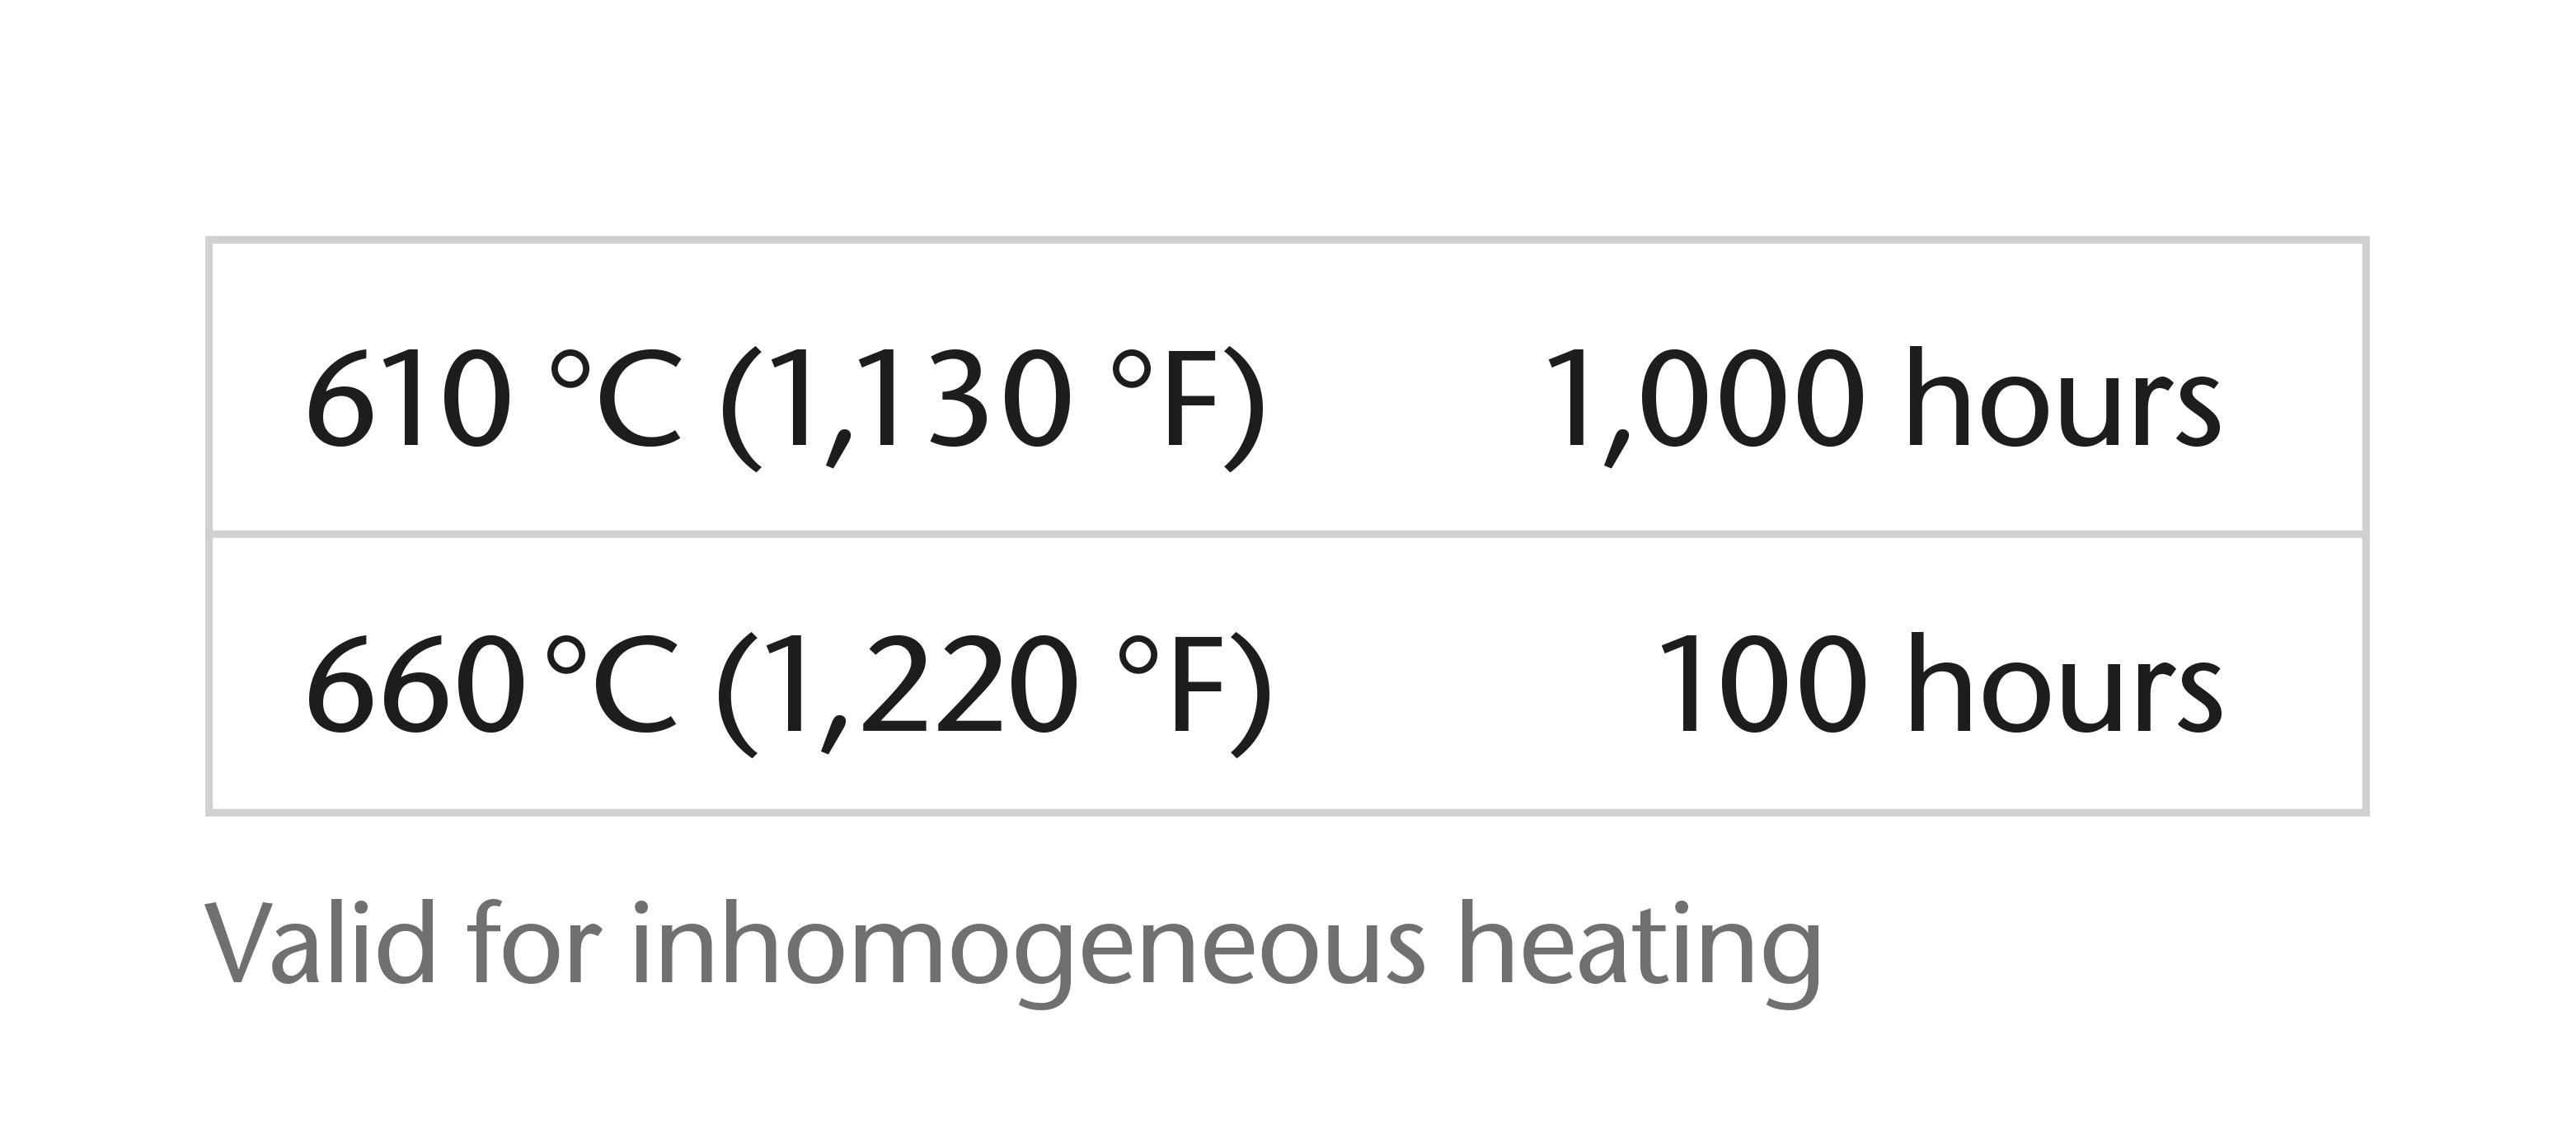 肖特 ROBAX® 的温度/时间负荷能力图表 